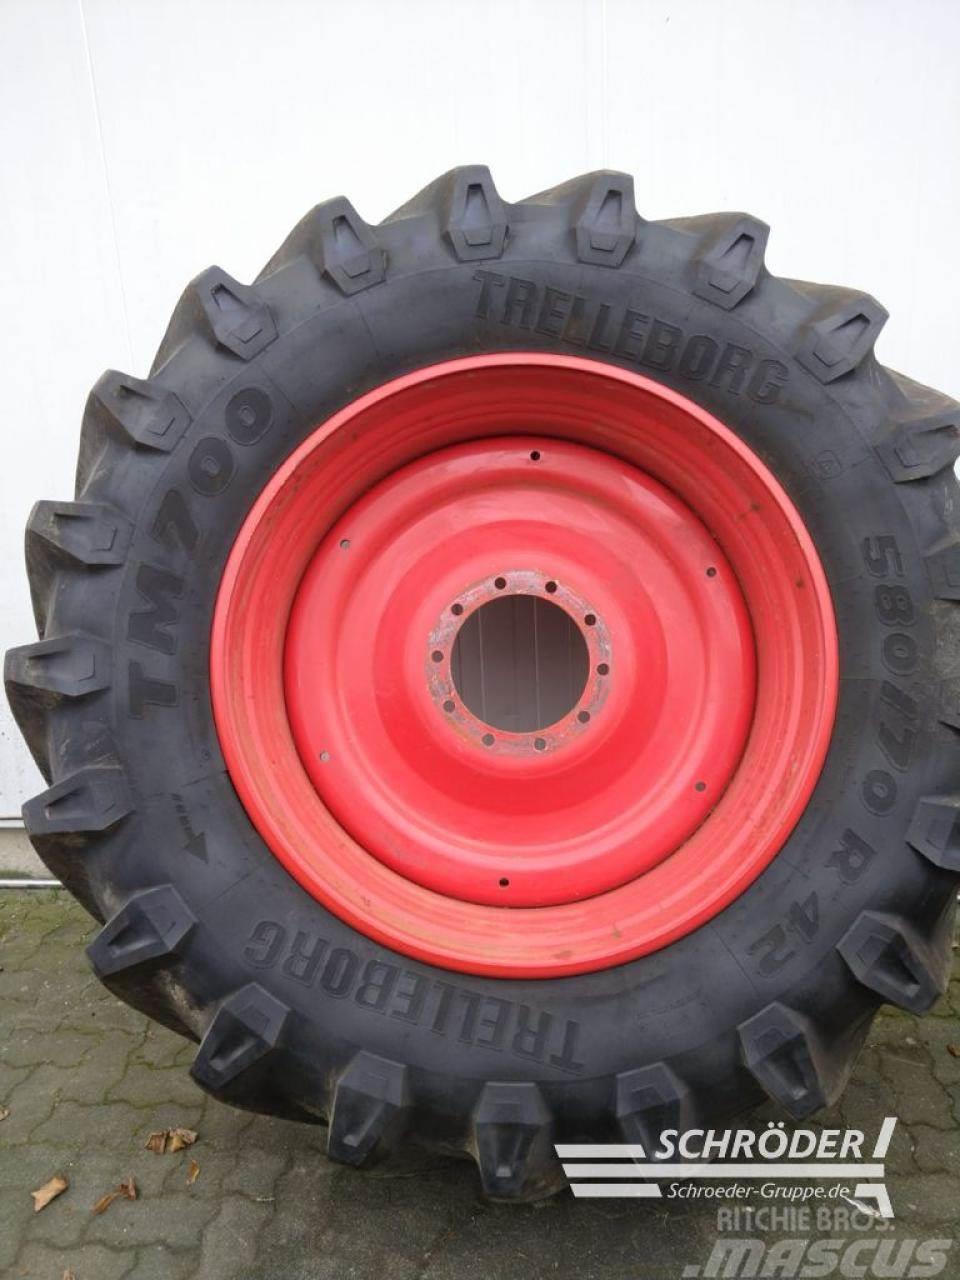 Trelleborg 480/70 R30 + 580/70 R42 Dual wheels